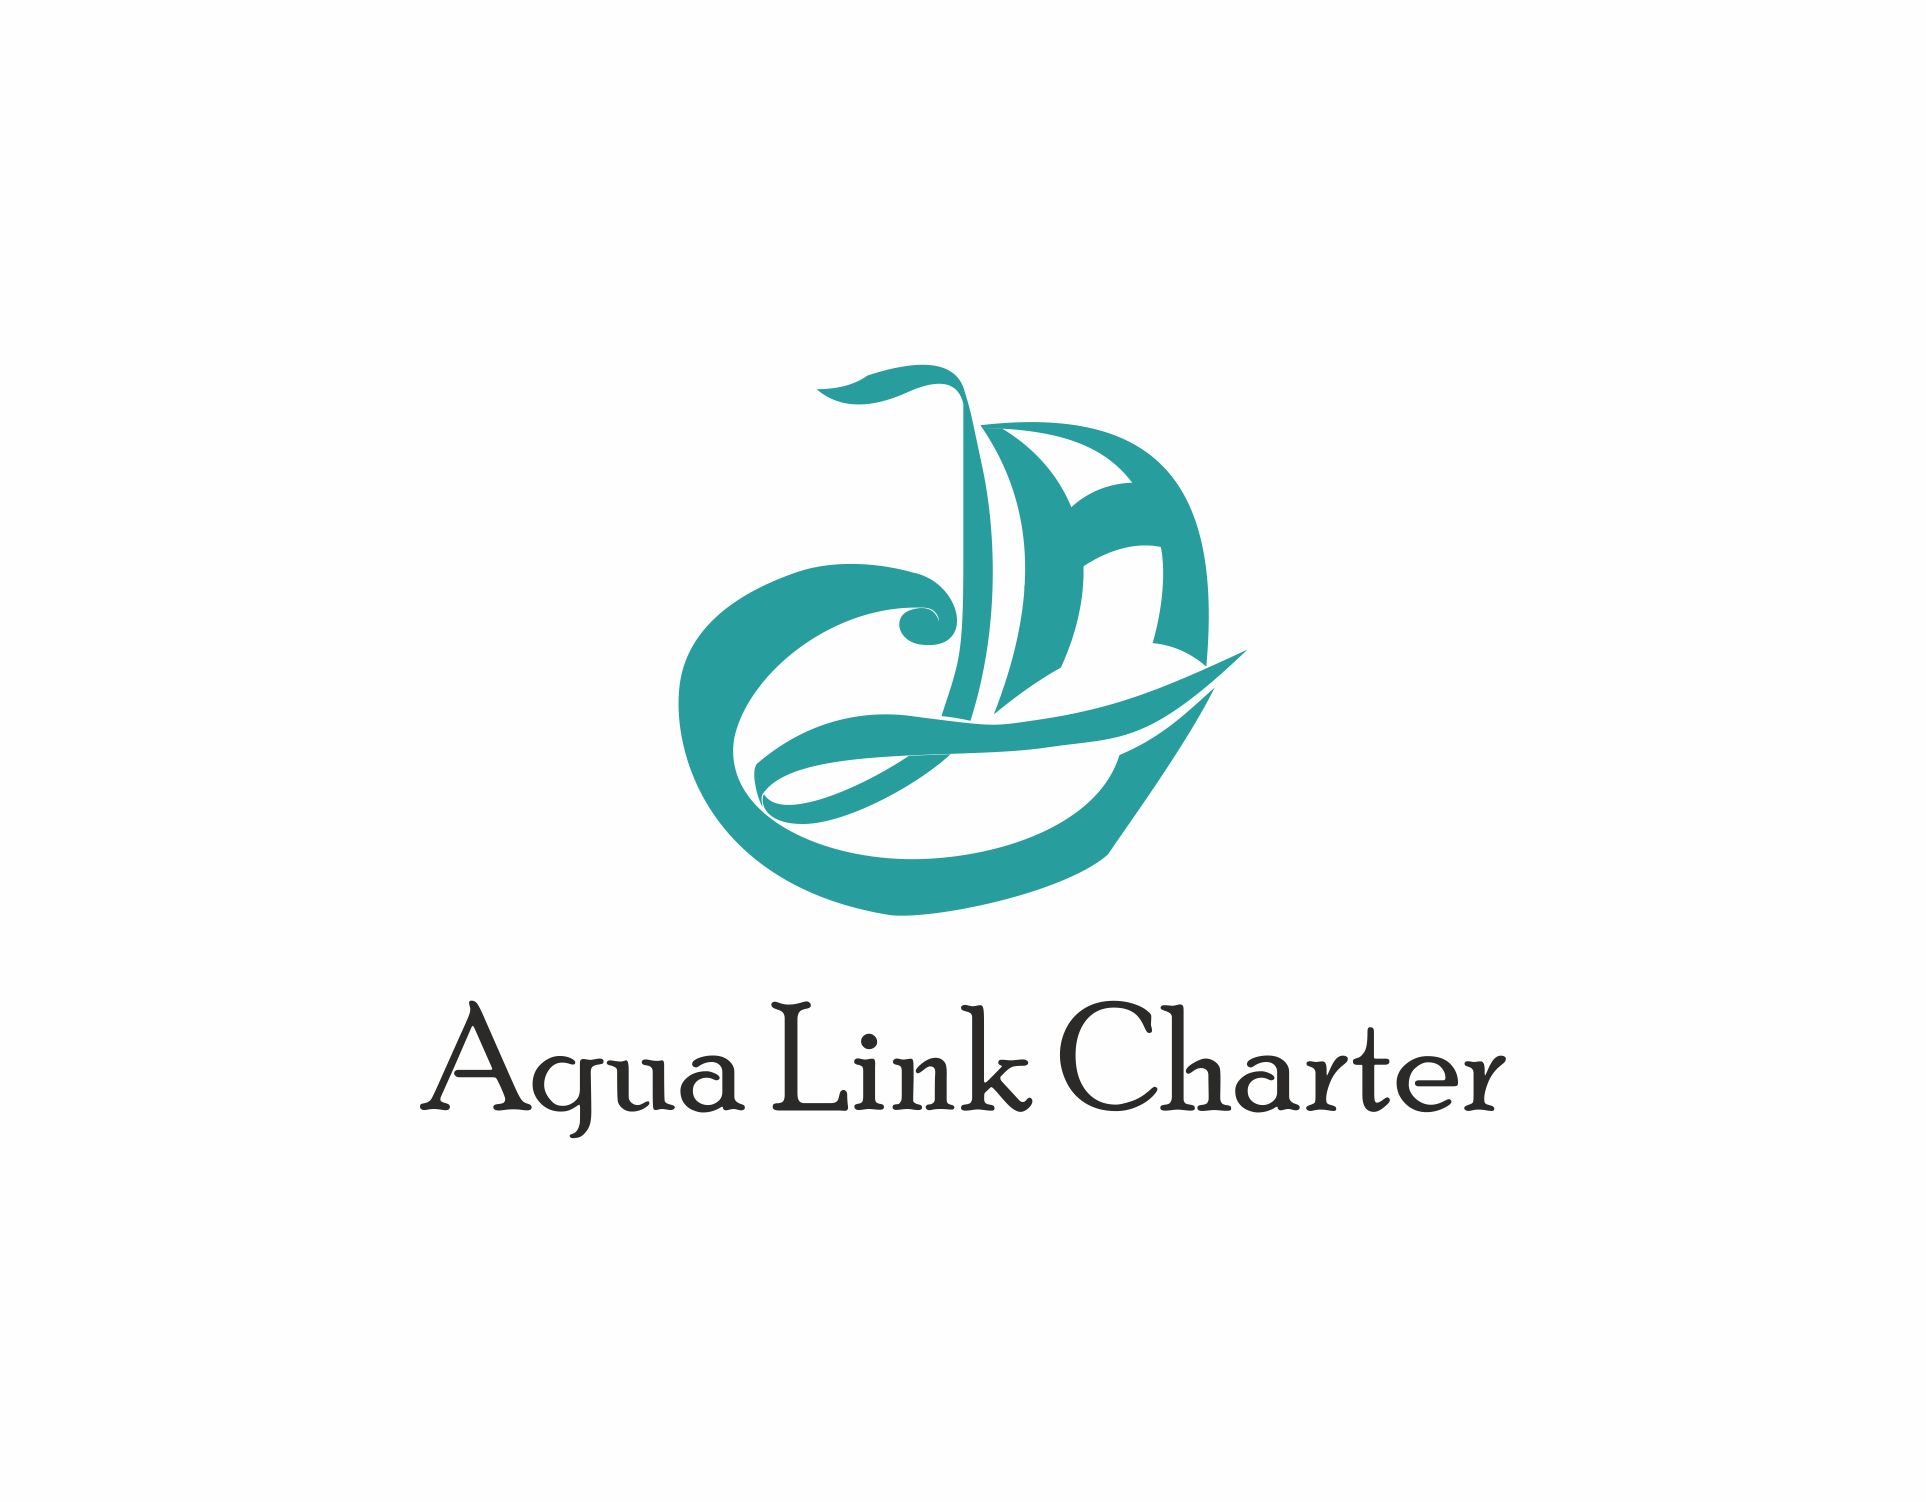 Аренда (чартер) парусных яхт - Aqua Link Charter - дизайнер IGOR-GOR